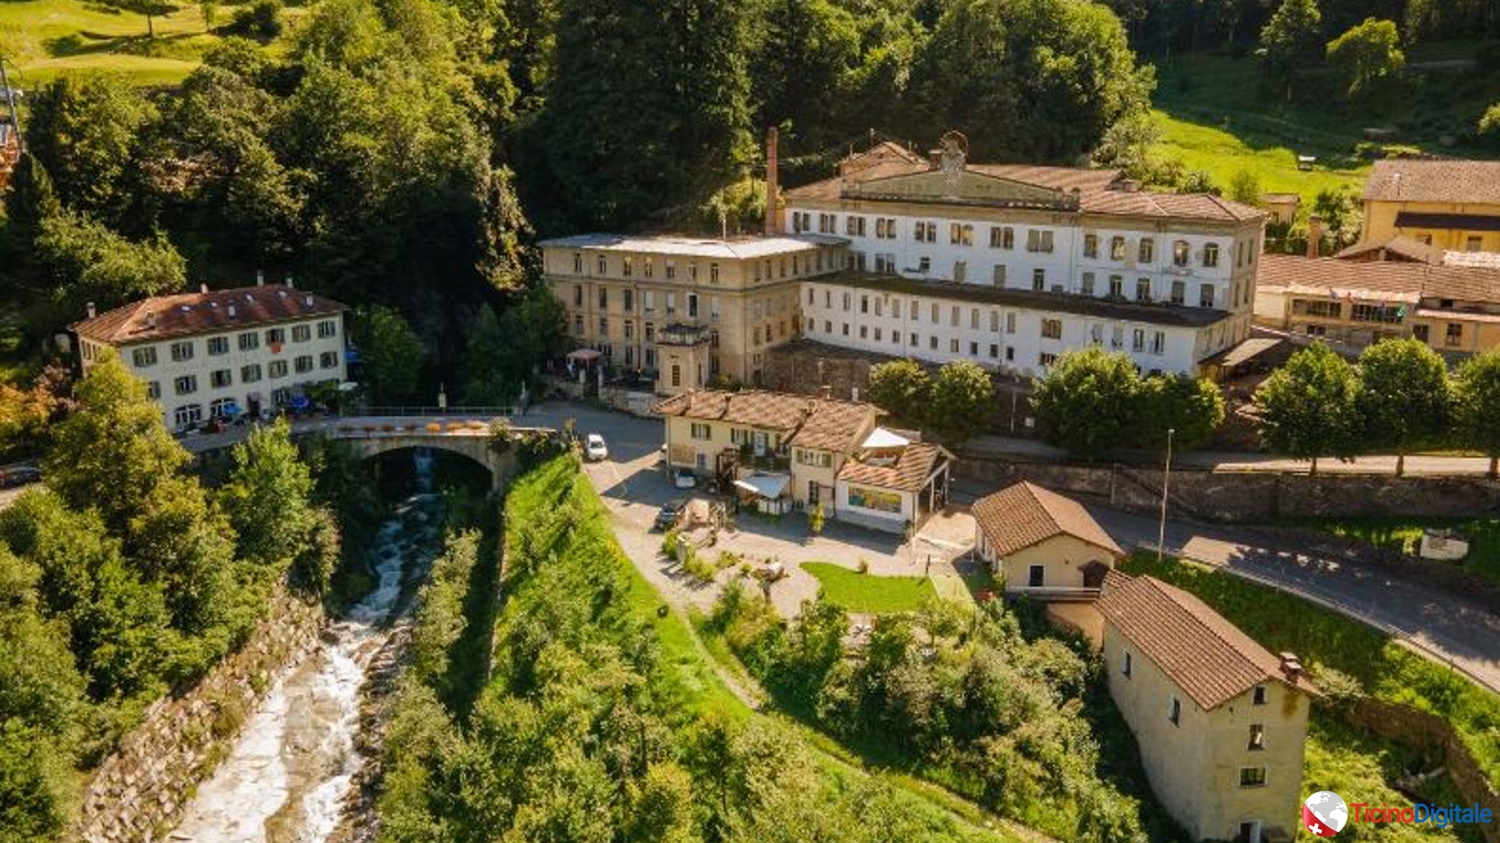 AvventaTI - Giorno 17: la Valle di Blenio, una bellissima regione del Canton Ticino